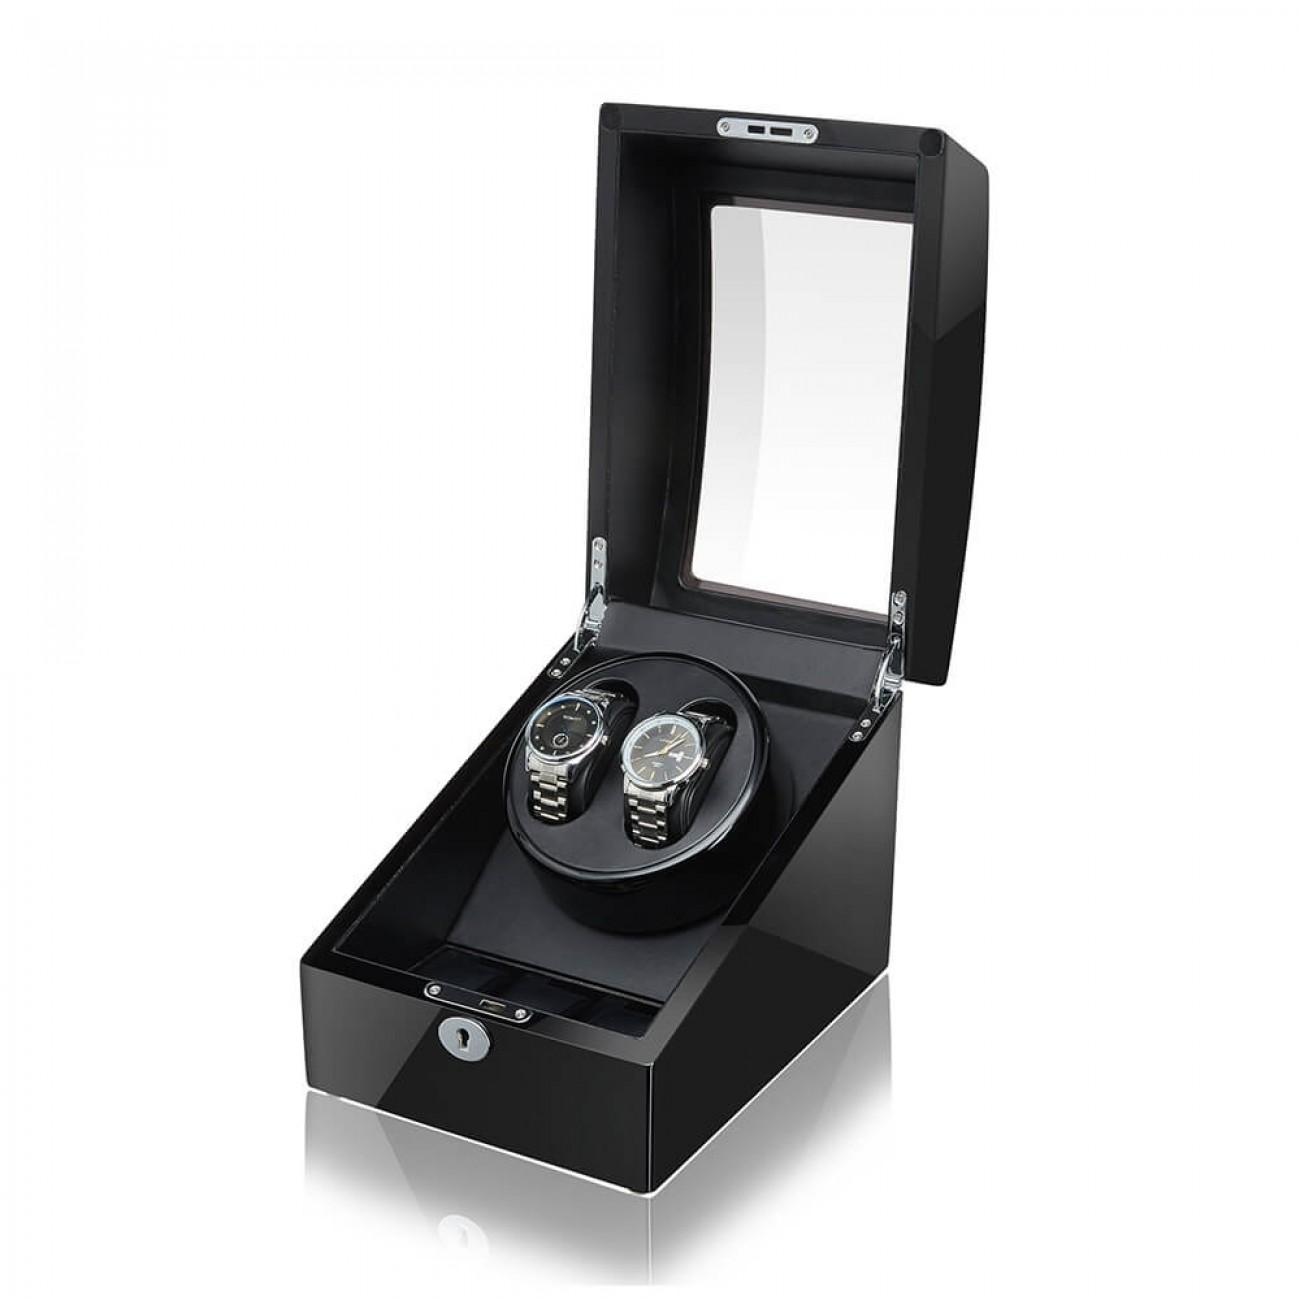 Classificeren microscoop De kerk Best Automatic Watch Winder with 3 Storages -Black | JQUEEN